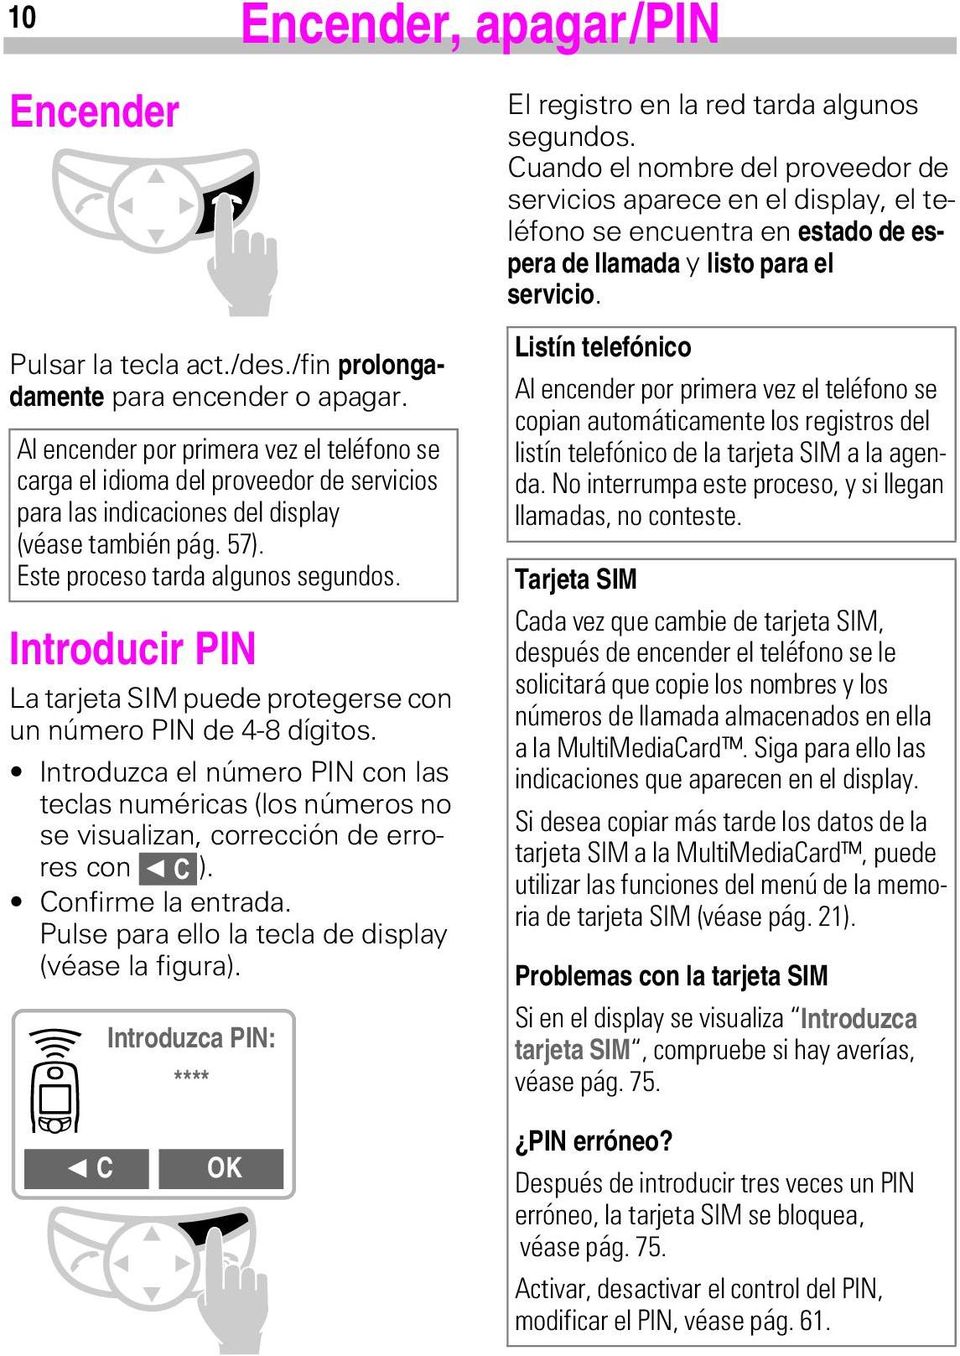 Introducir PIN La tarjeta SIM puede protegerse con un número PIN de 4-8 dígitos. Introduzca el número PIN con las teclas numéricas (los números no se visualizan, corrección de errores con m&).